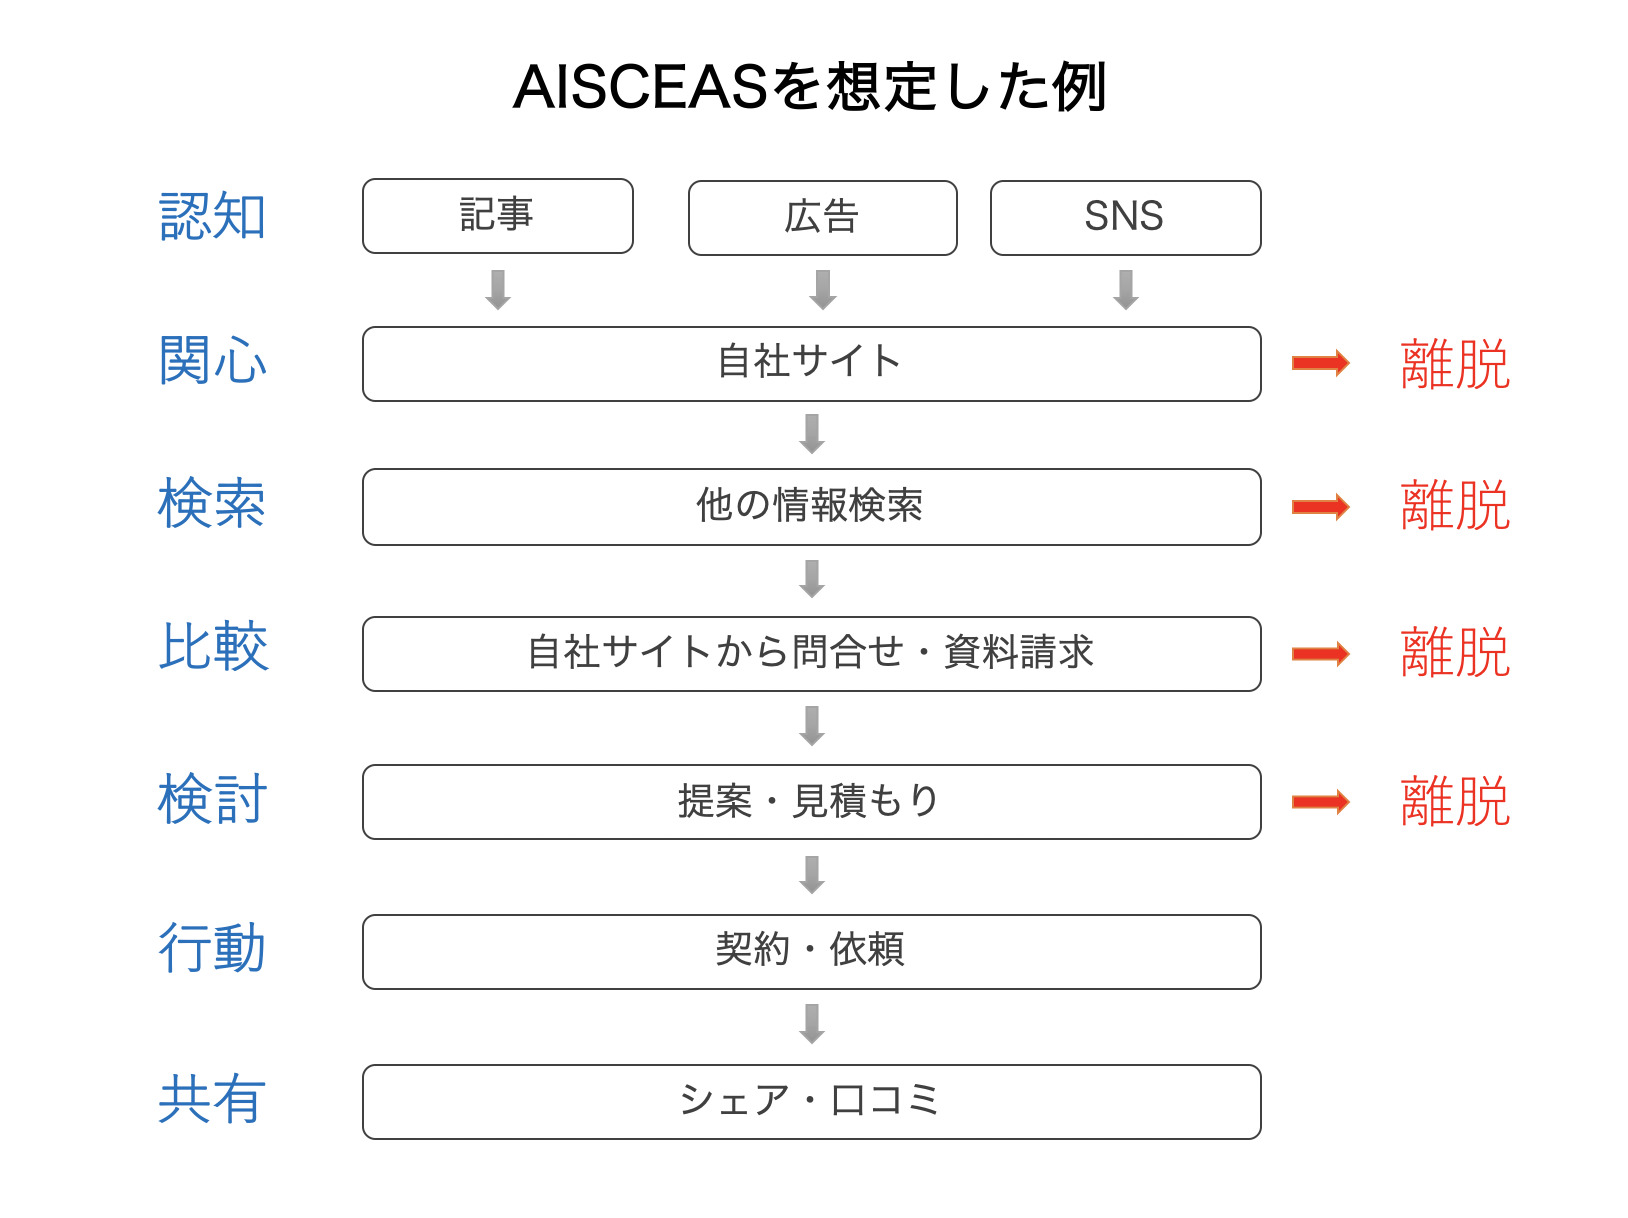 AISCEASの購買行動プロセスでリフォーム業者を例に解説